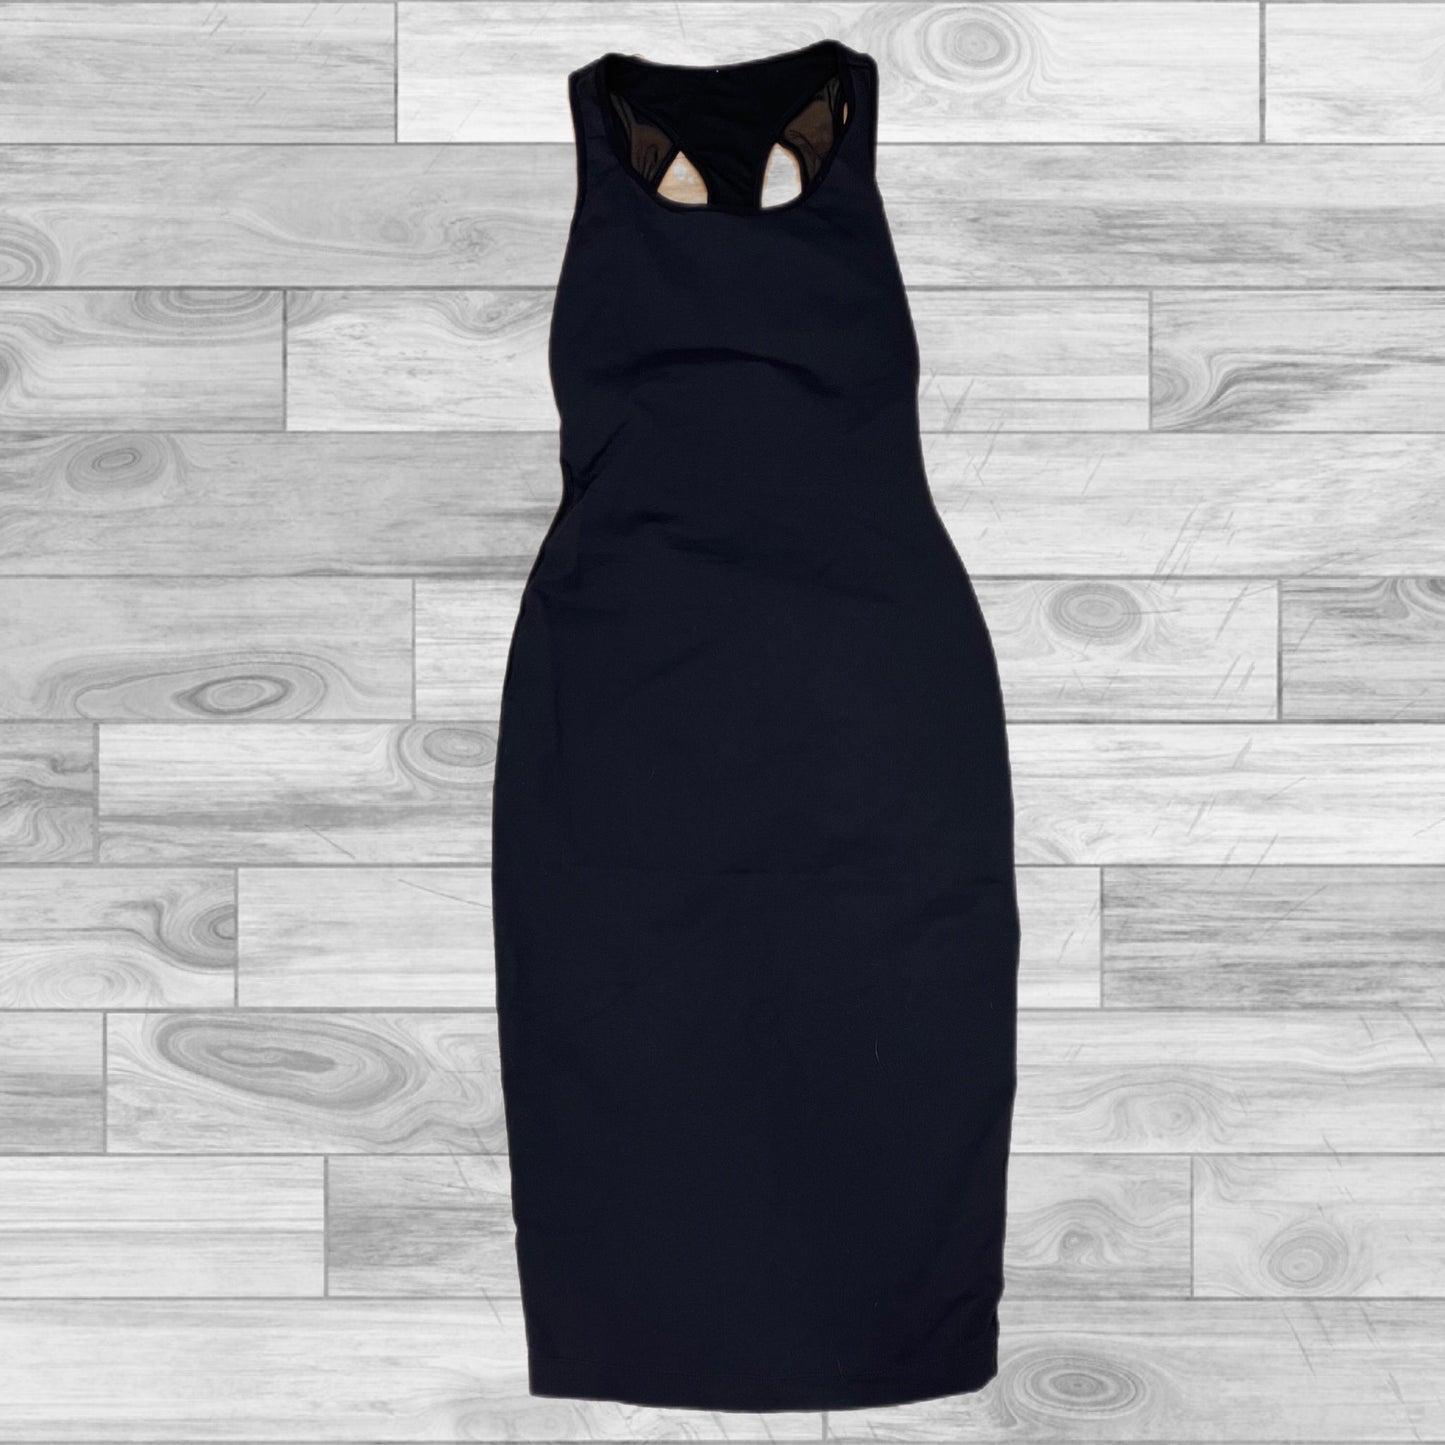 Black Athletic Dress Lululemon, Size 4